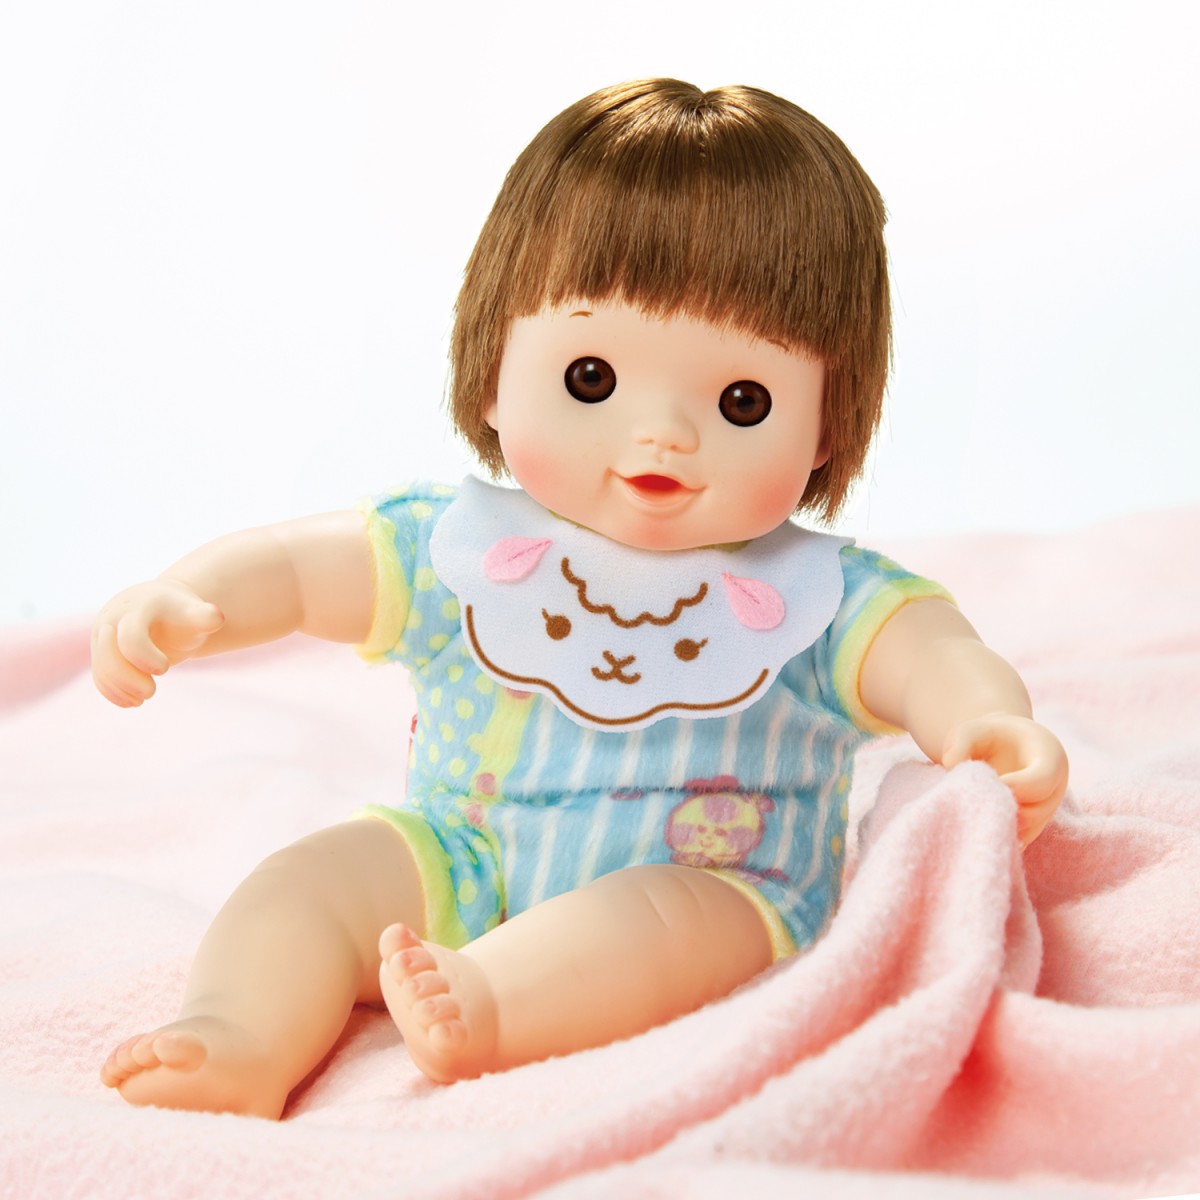 知育人形『ぽぽちゃん』生産終了へ 多くの子どもたちの成長を見守る